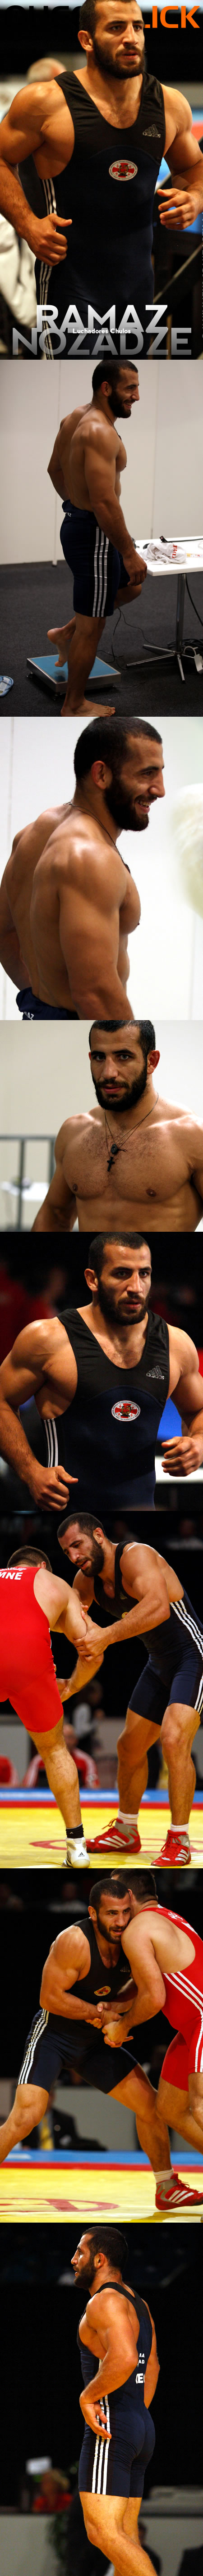 Luchadores Chulos: Ramaz Nozadze